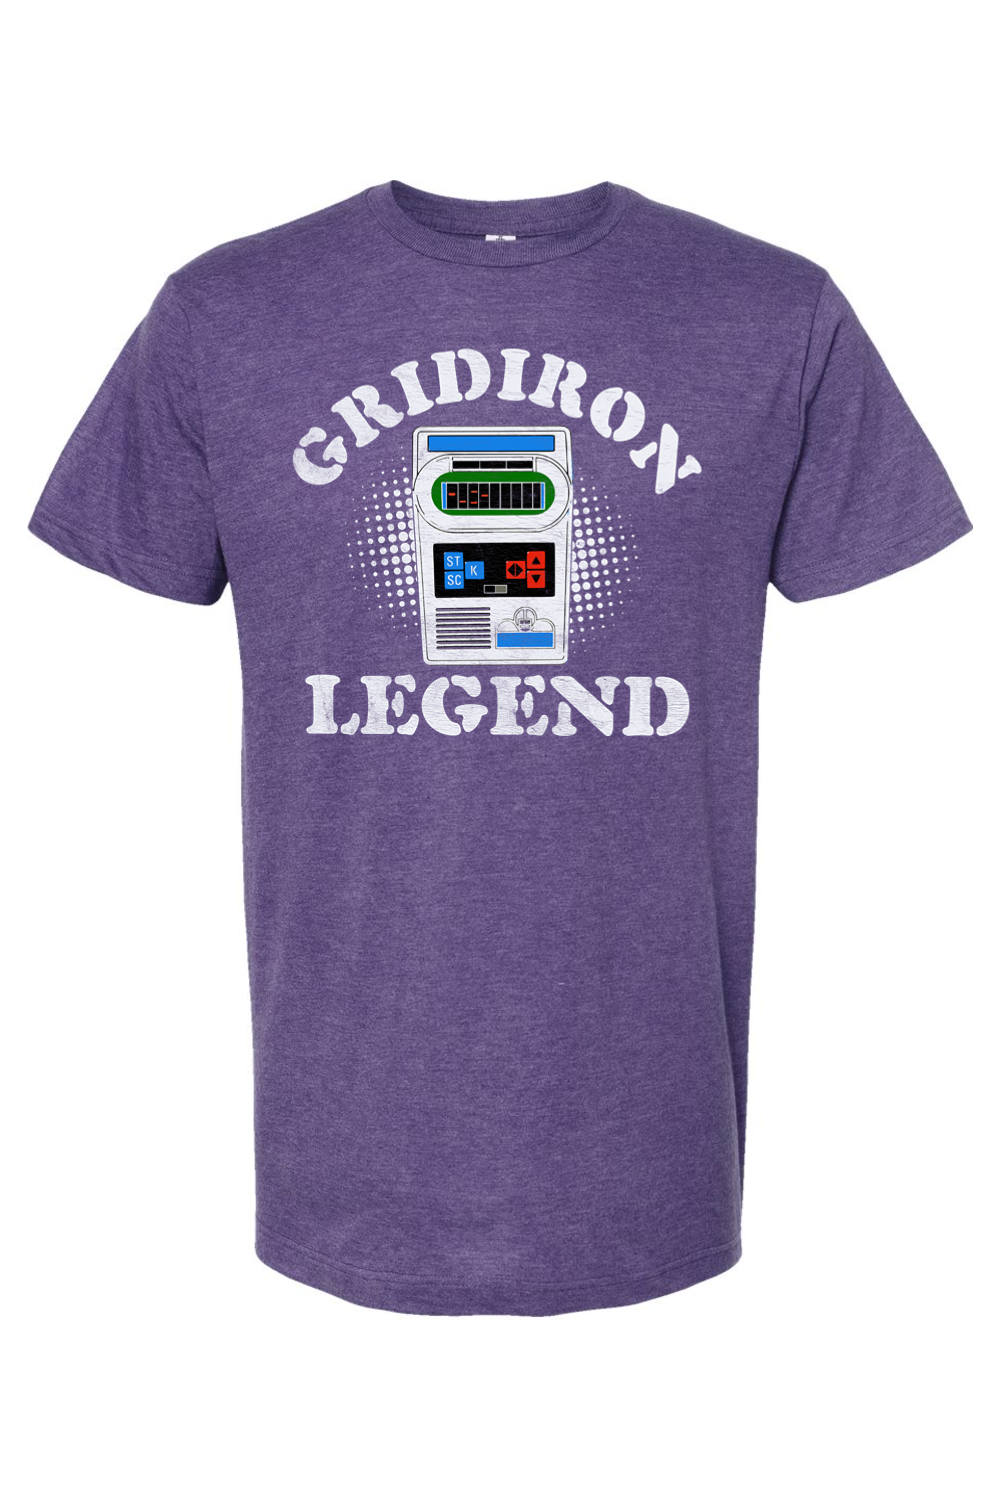 Gridiron Legend - Electronic Football - Yinzylvania